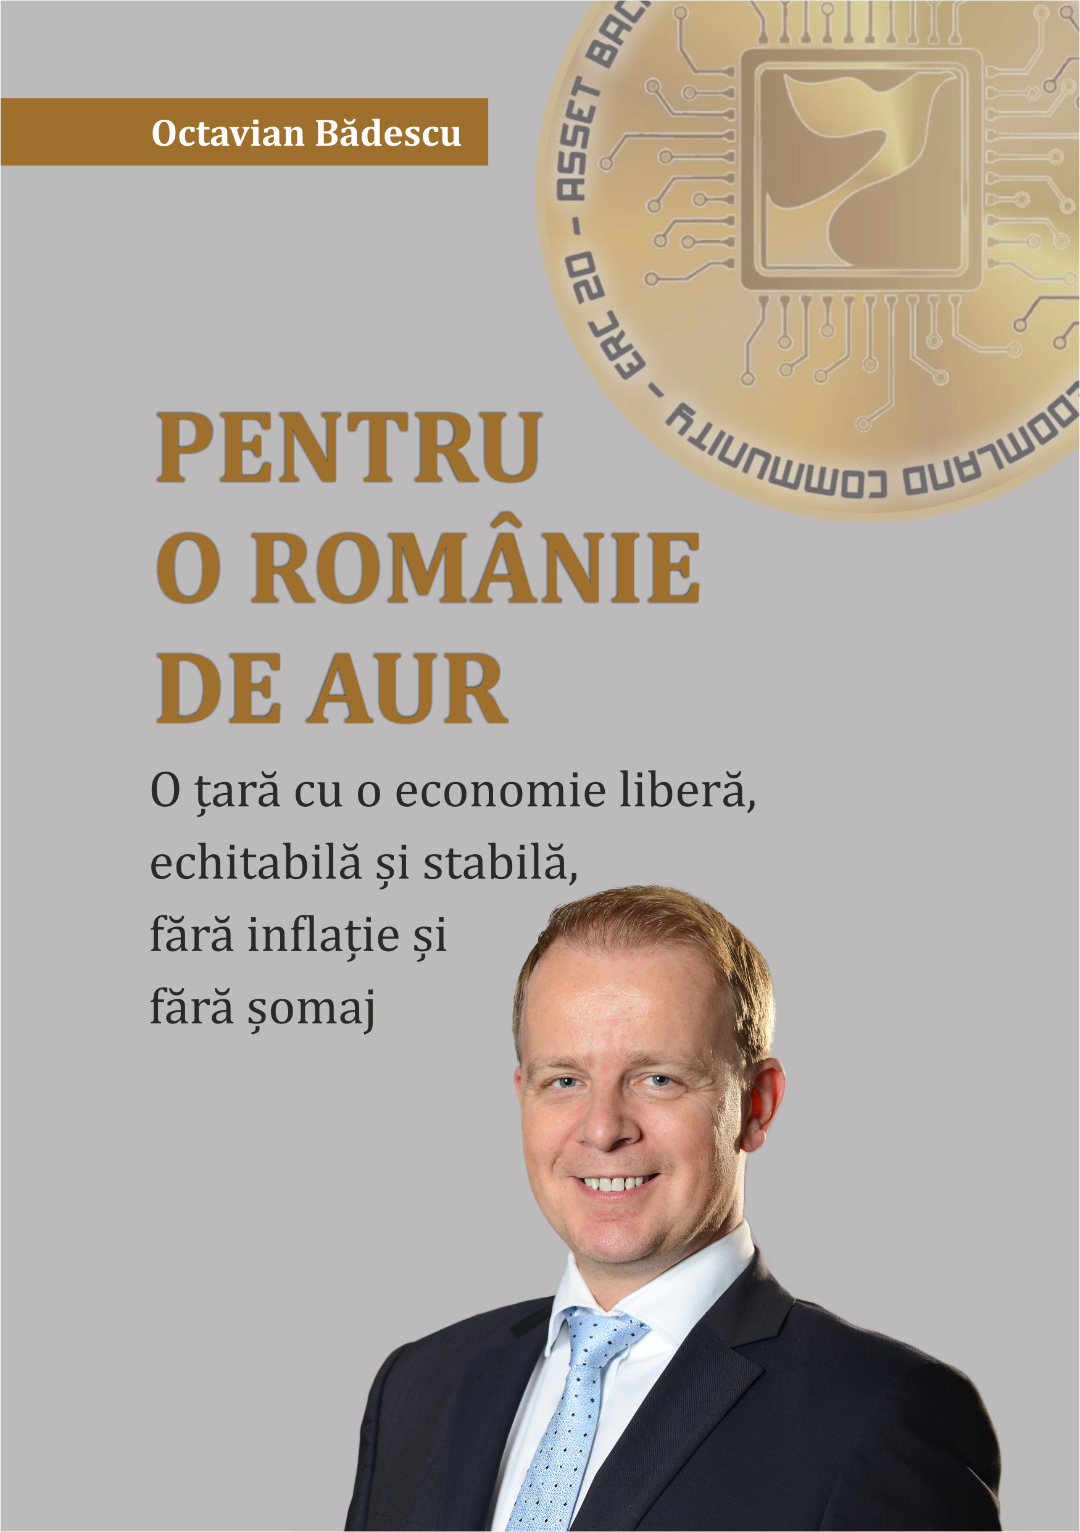 Antreprenorul Octavian Bădescu lansează cartea ,,Pentru o Românie de aur”, în care propune o reformă economică profundă